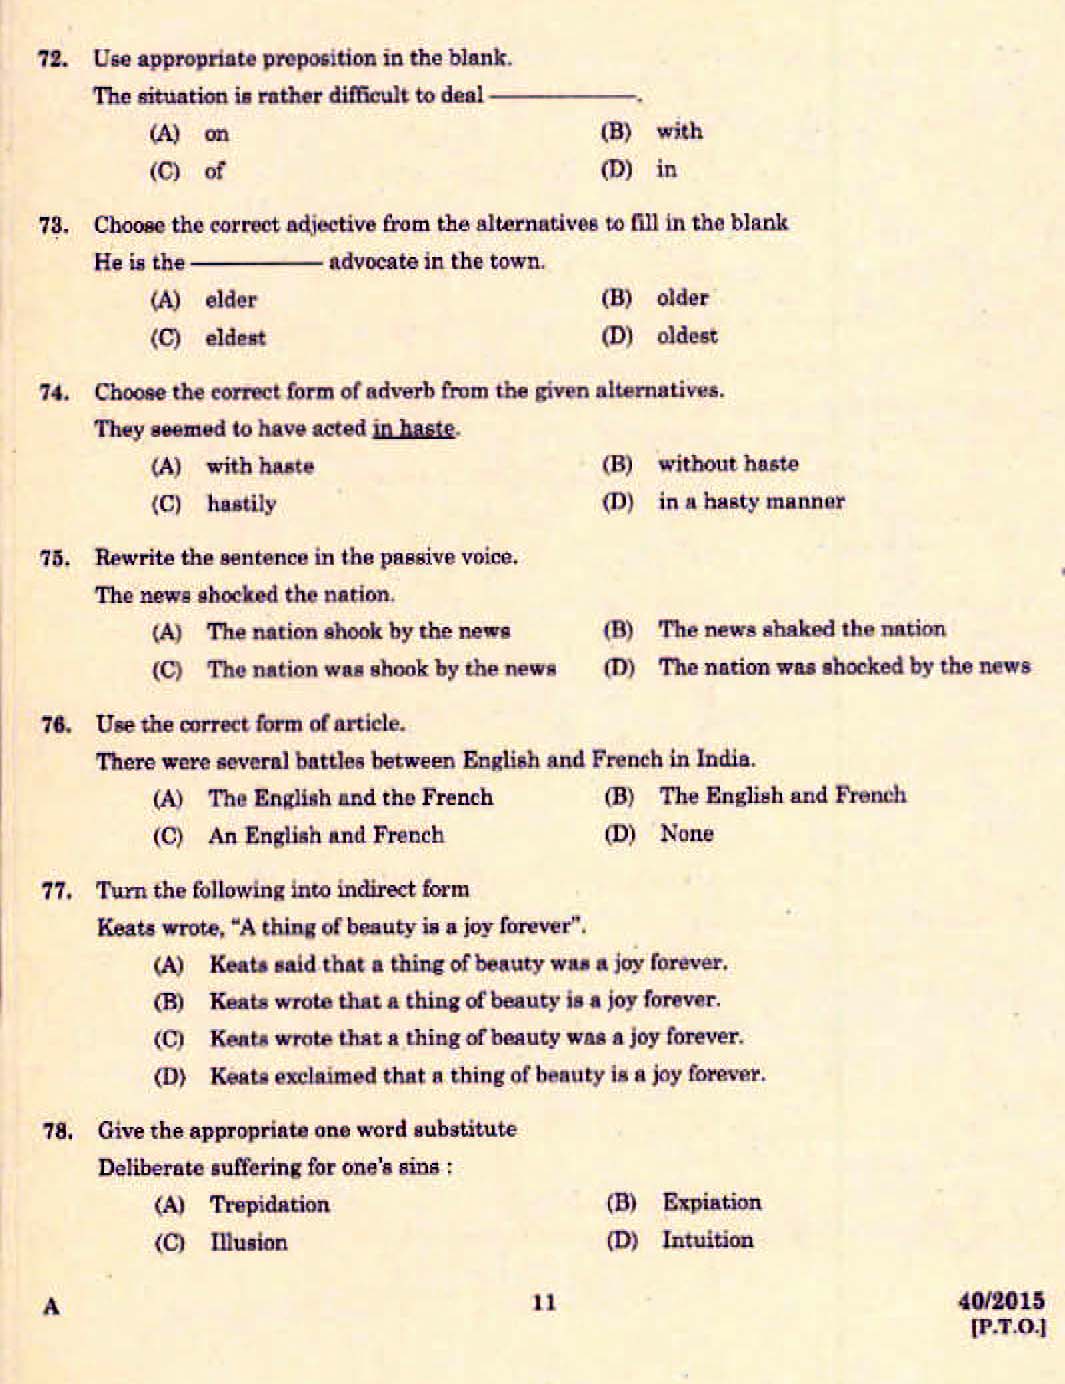 Kerala PSC Junior Assistant Exam 2015 Question Paper Code 402015 9